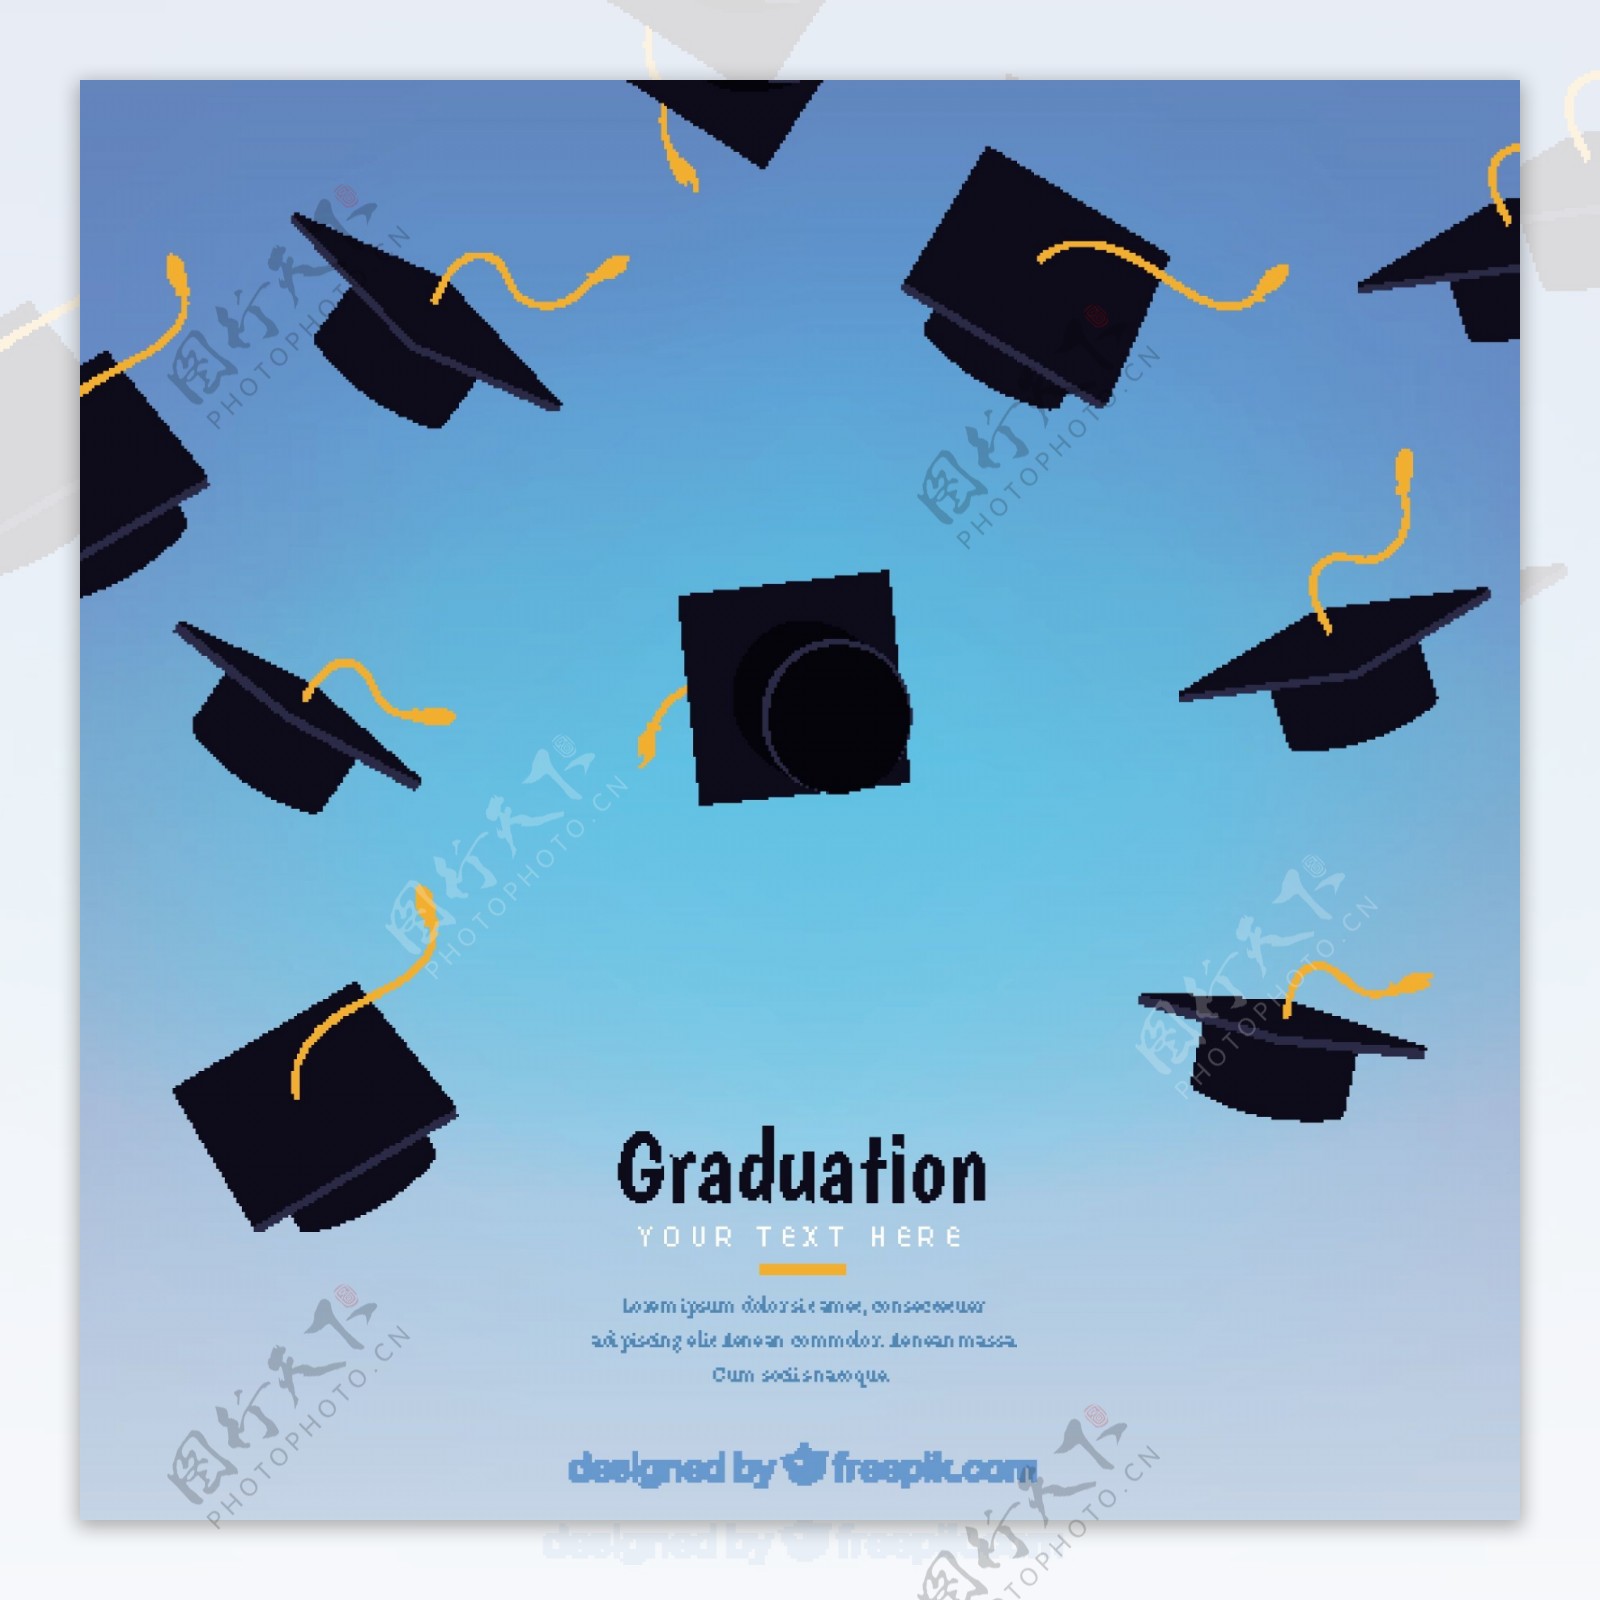 黑色毕业帽装饰图案抽象蓝色背景